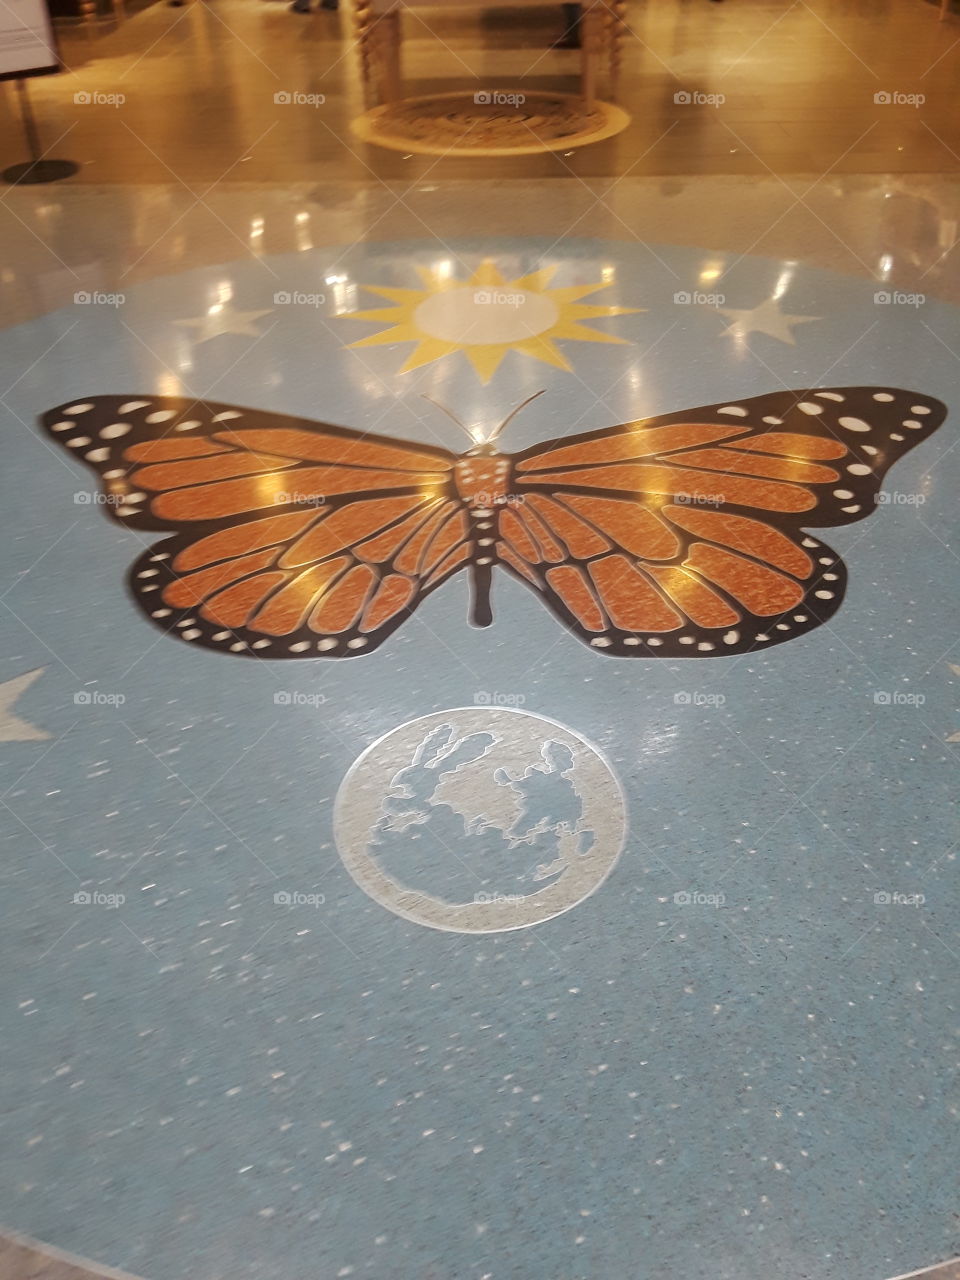 Airport flooring